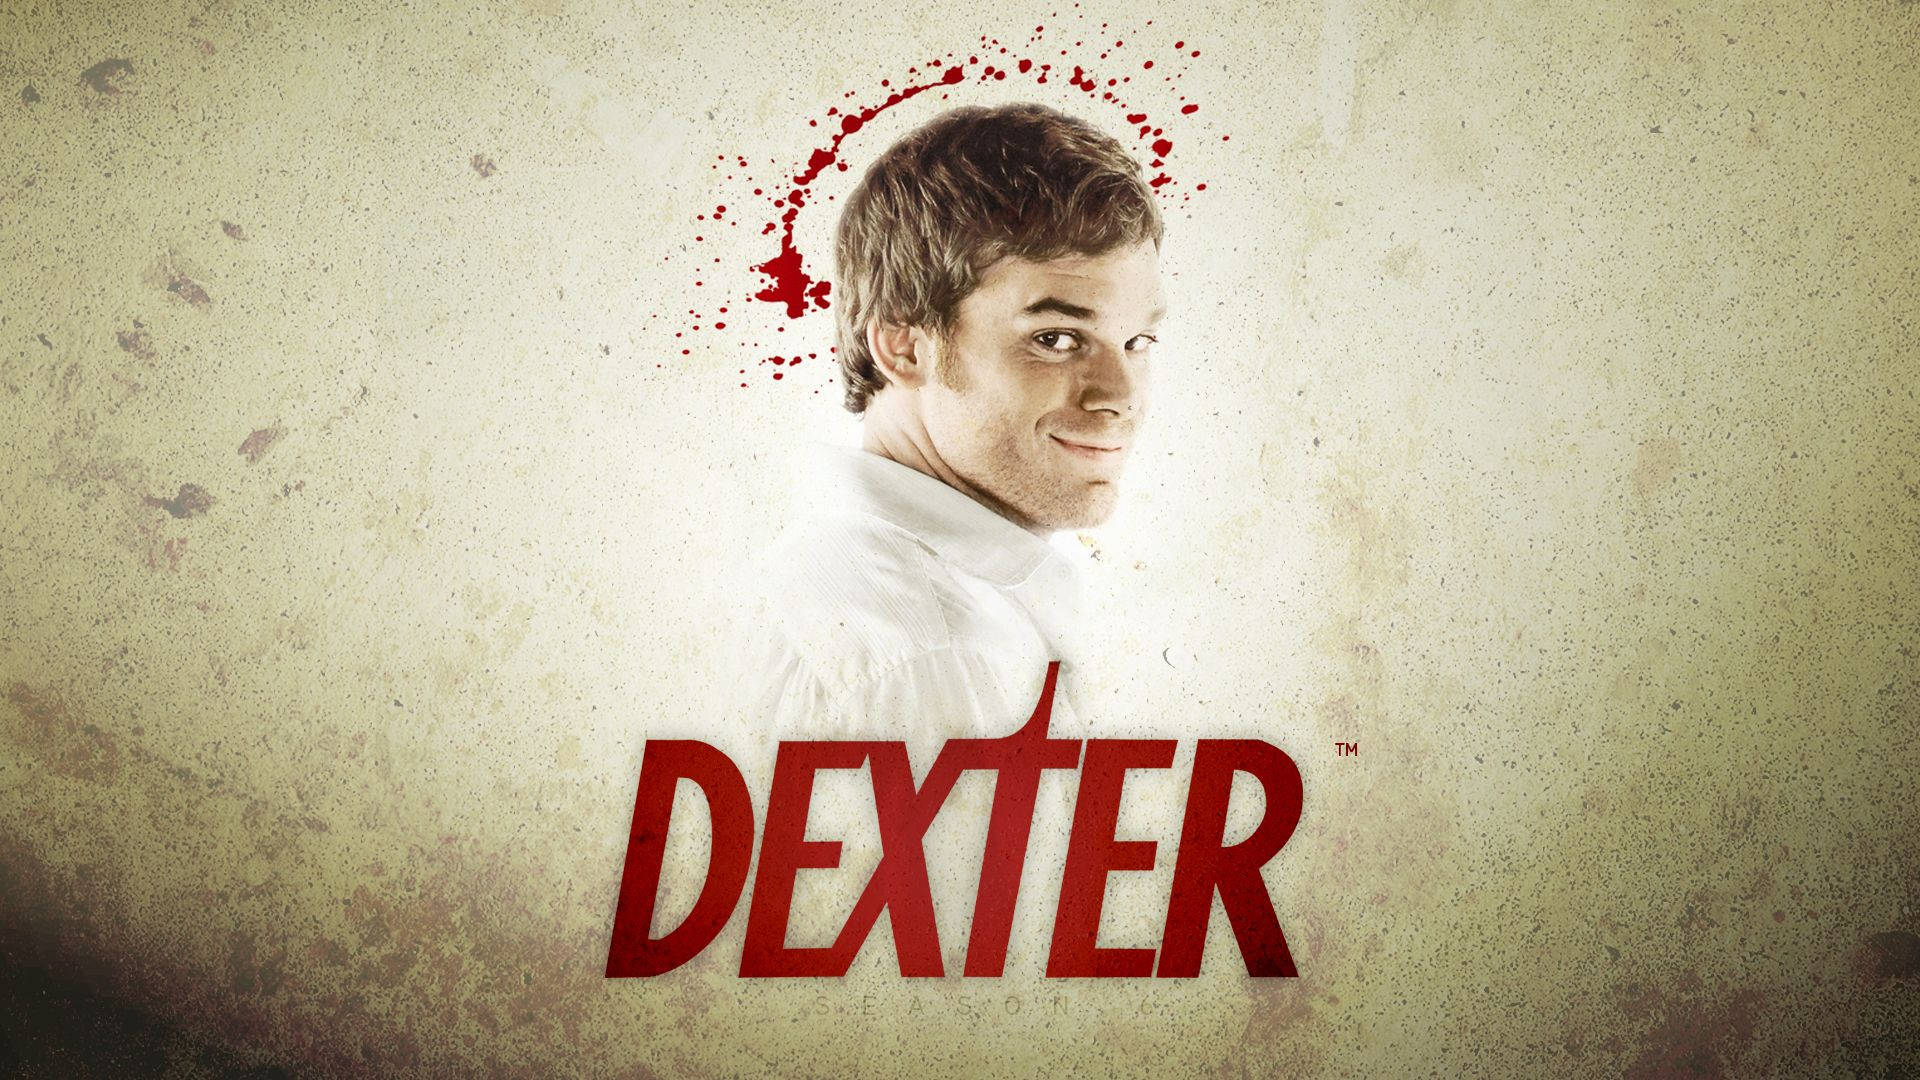 Outstanding Lead Actor Dexter Morgan Wallpaper